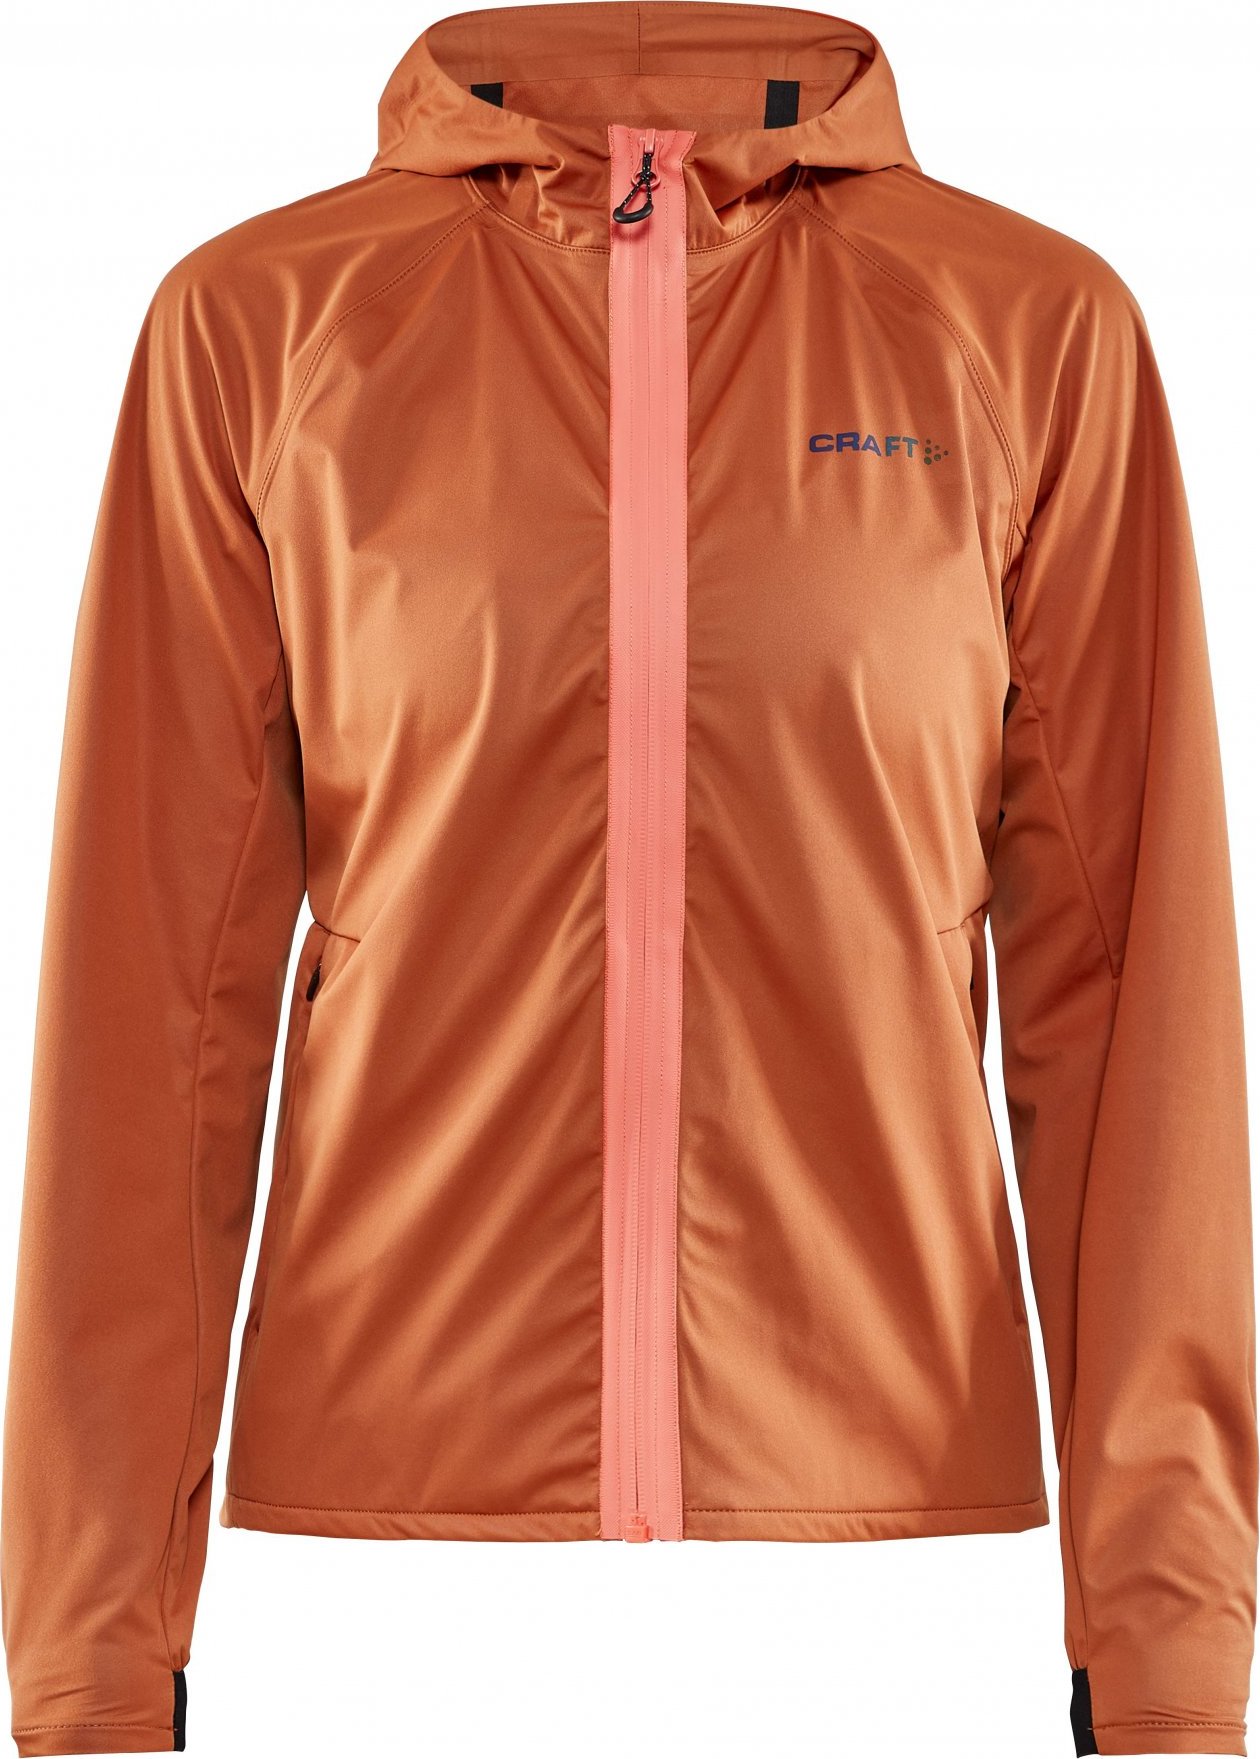 Dámská běžecká bunda CRAFT Hydro oranžová Velikost: S